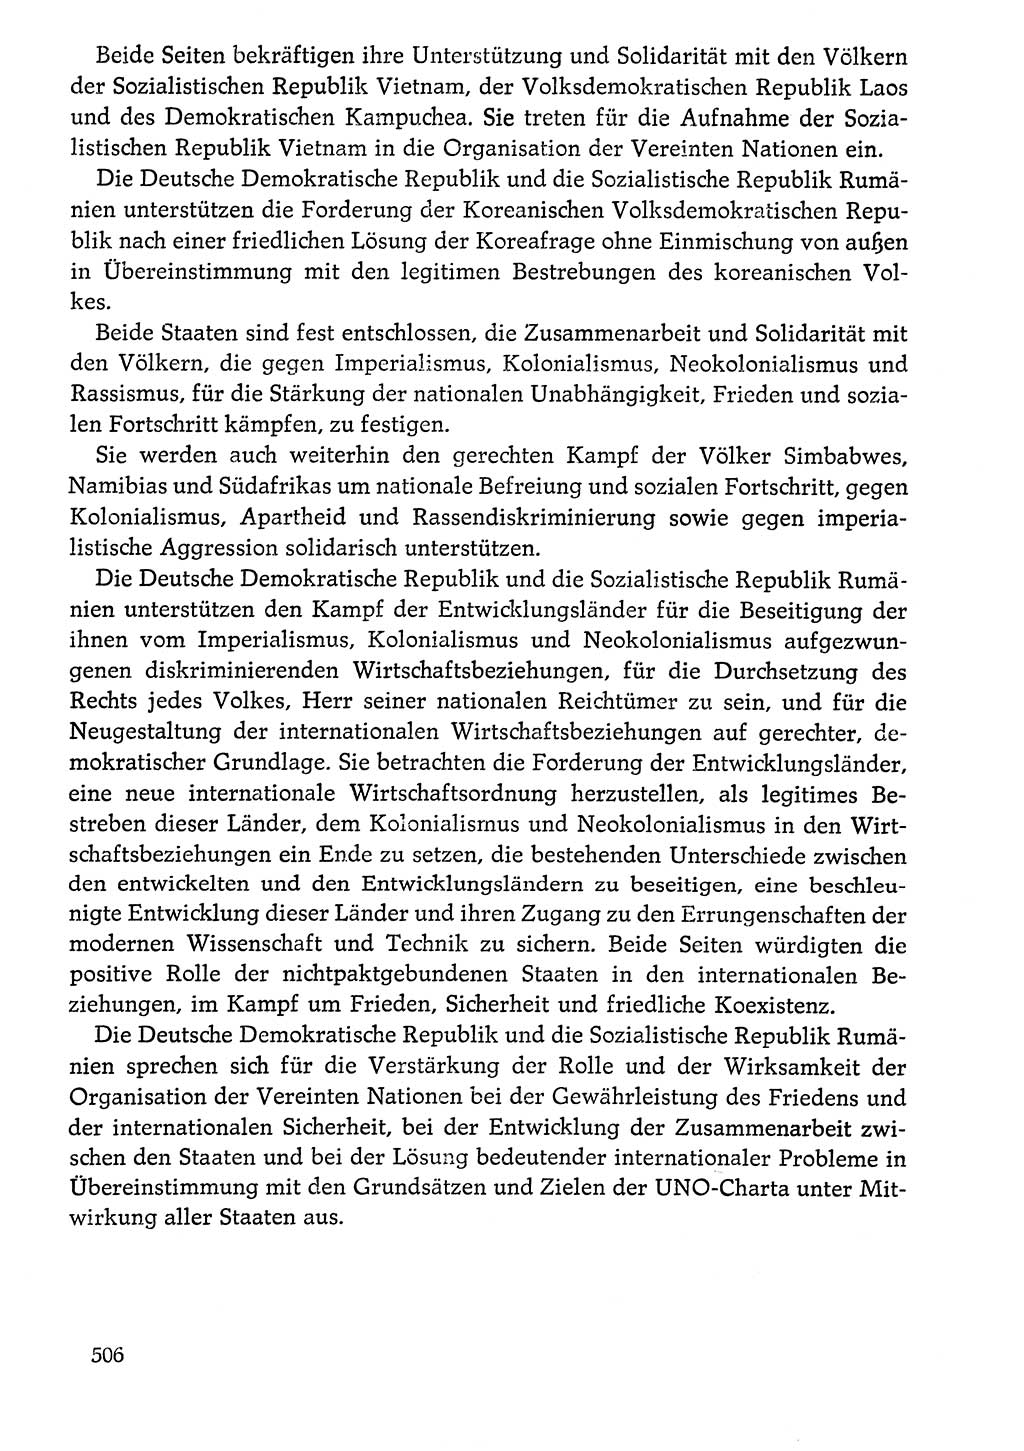 Dokumente der Sozialistischen Einheitspartei Deutschlands (SED) [Deutsche Demokratische Republik (DDR)] 1976-1977, Seite 506 (Dok. SED DDR 1976-1977, S. 506)